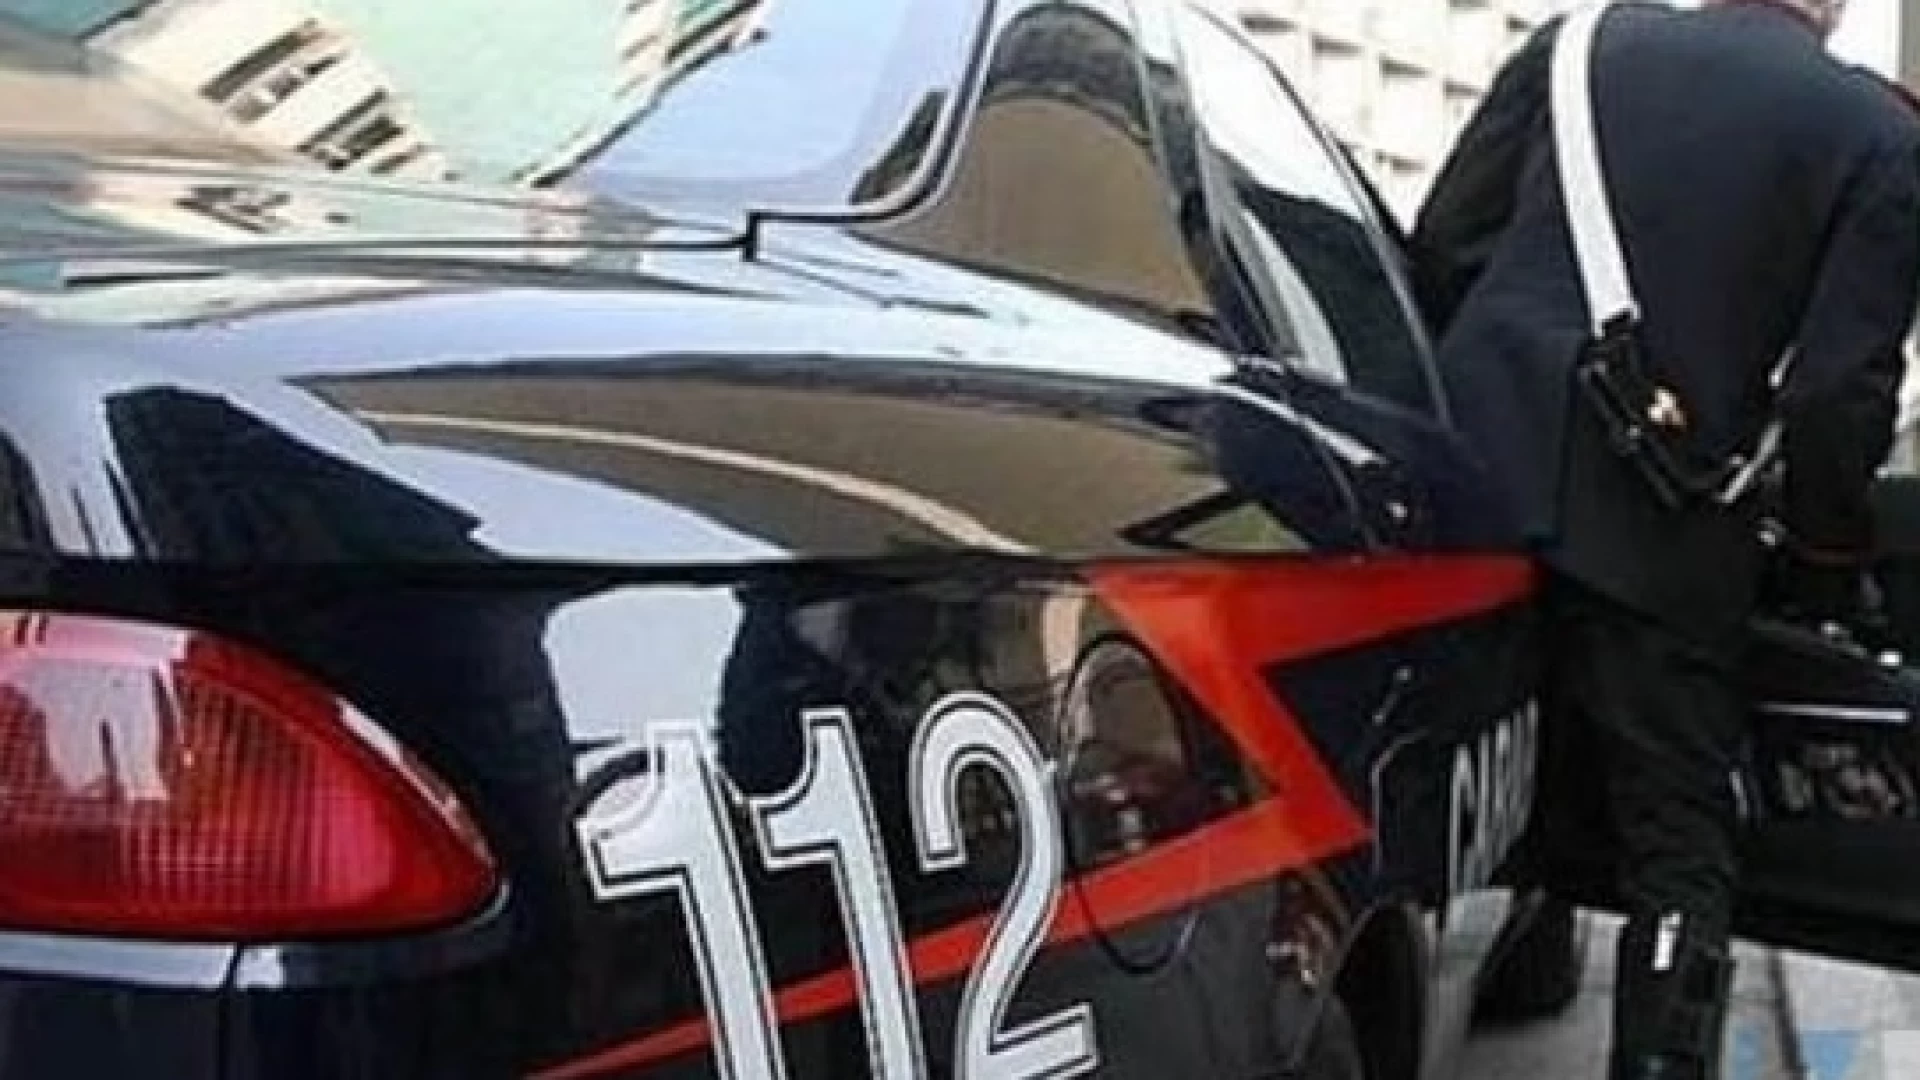 Aiuti economici non dovuti, i Carabinieri di Forlì del Sannio denunciano più persone